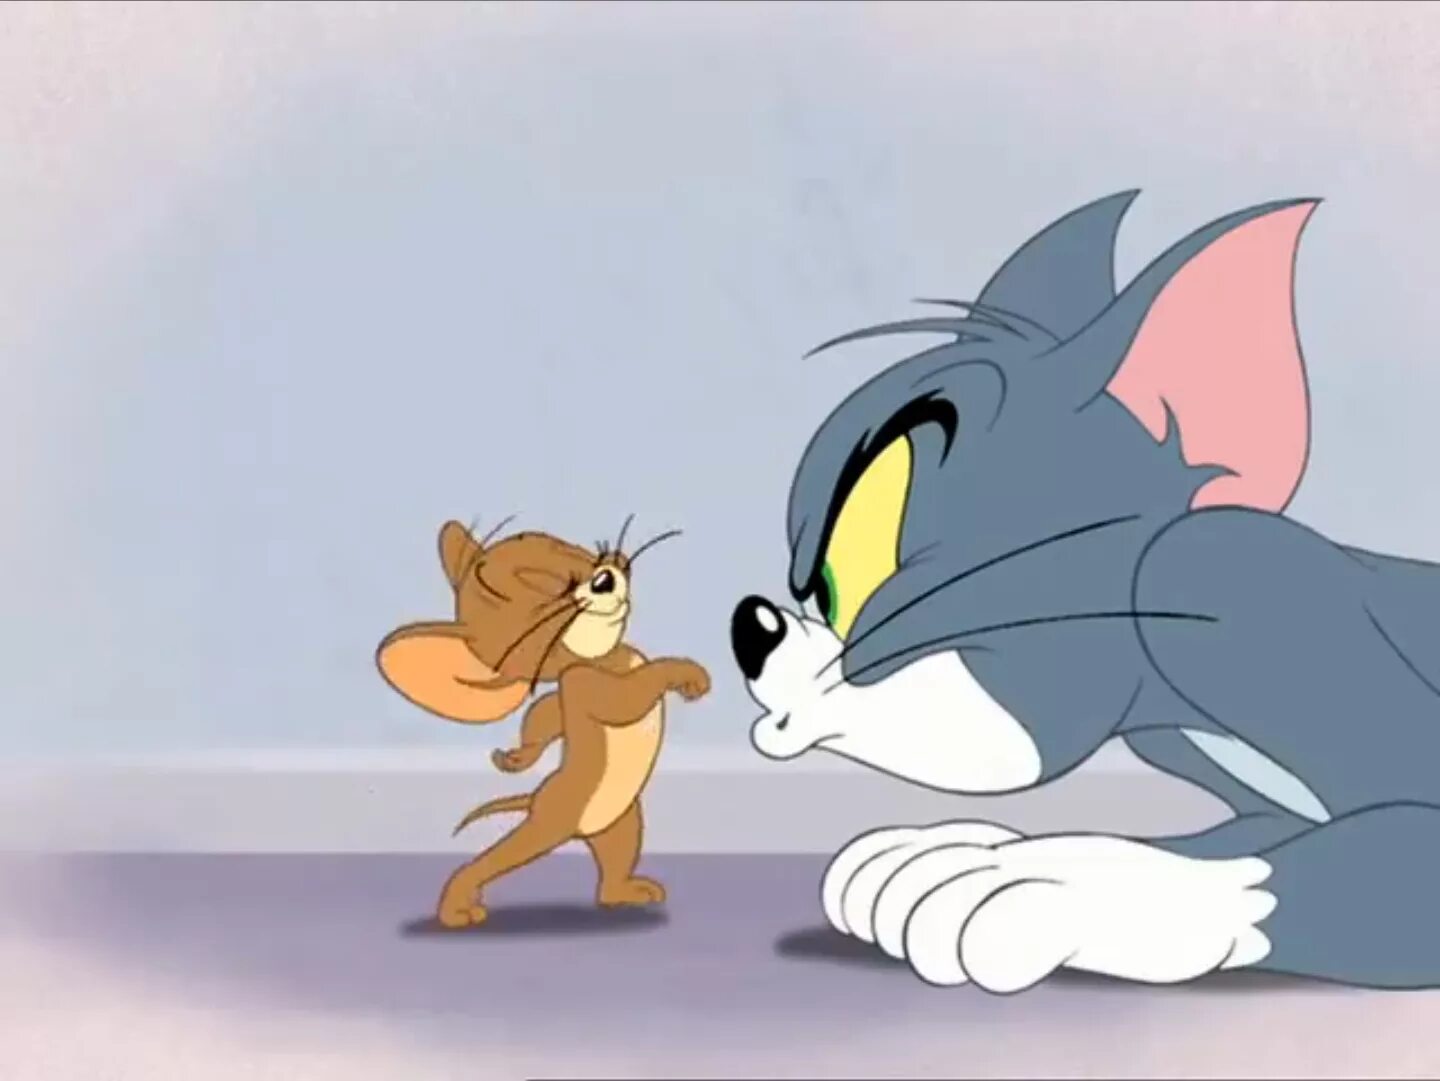 Том и джерри делать. Том и Джерри Tom and Jerry. Том и Джерри Дисней. Том и Джерри (Tom and Jerry) 1940.